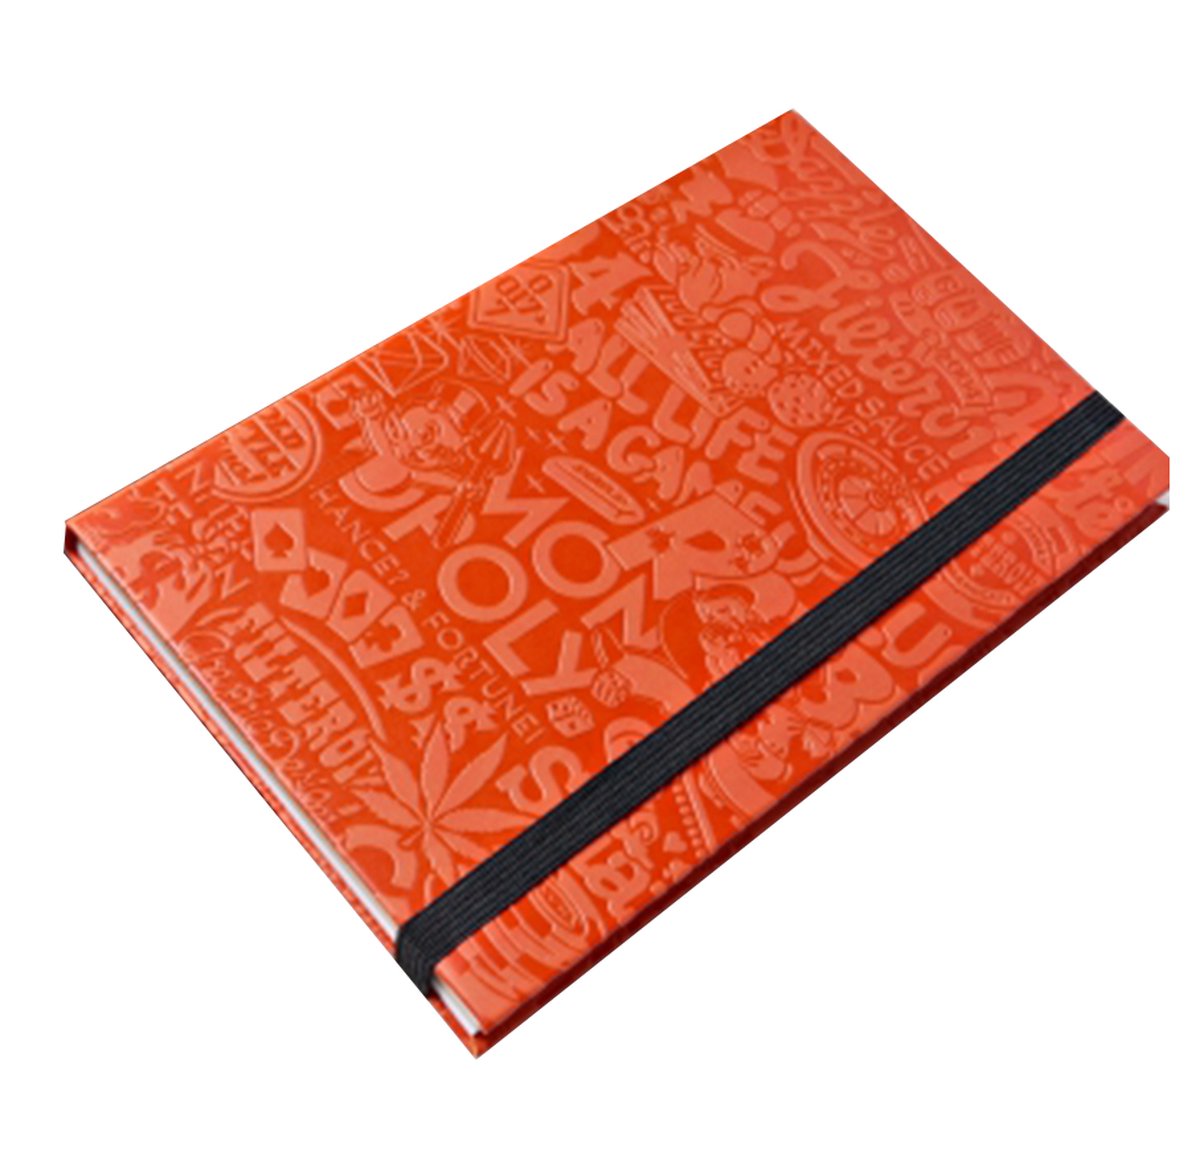 FILTER017 NOTEBOOK Filter017 CLASSIC PATTERN EMBOSSED - Mannen en Dames Notitieboek - notitieboek - Notebook - notitieboek met reliëf kaft - Dagboek